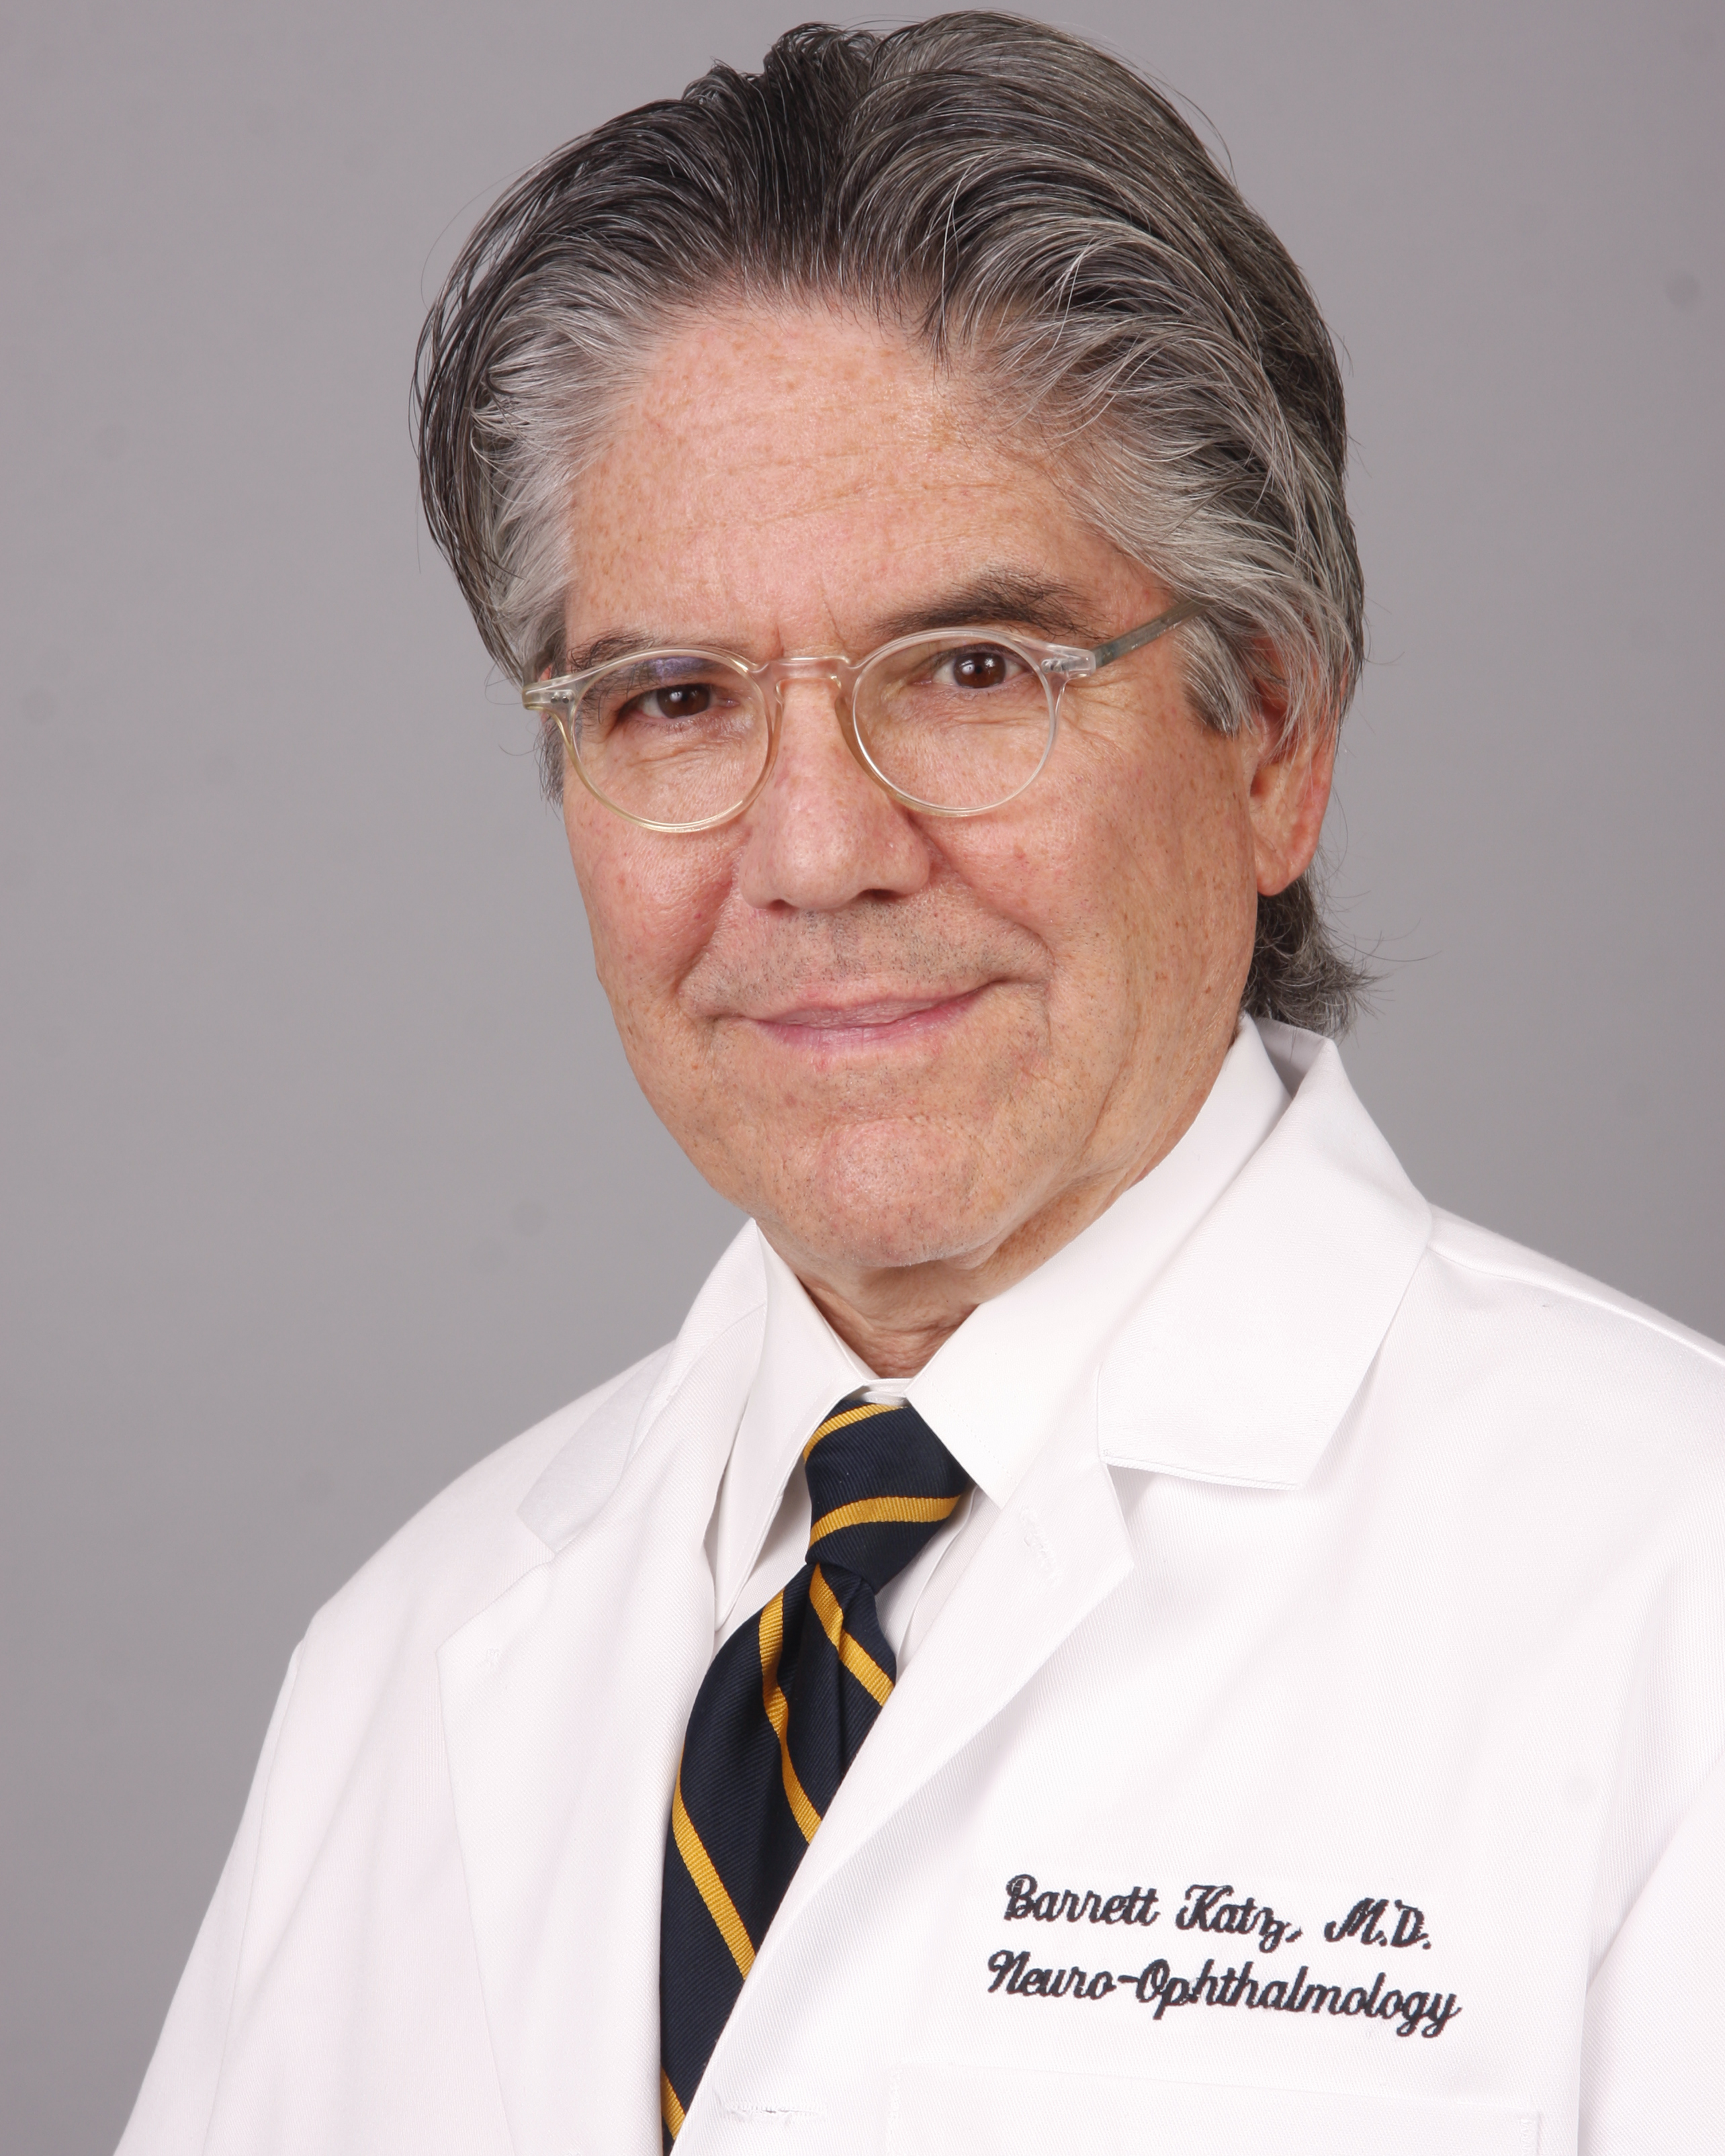 Dr. Barrett Katz